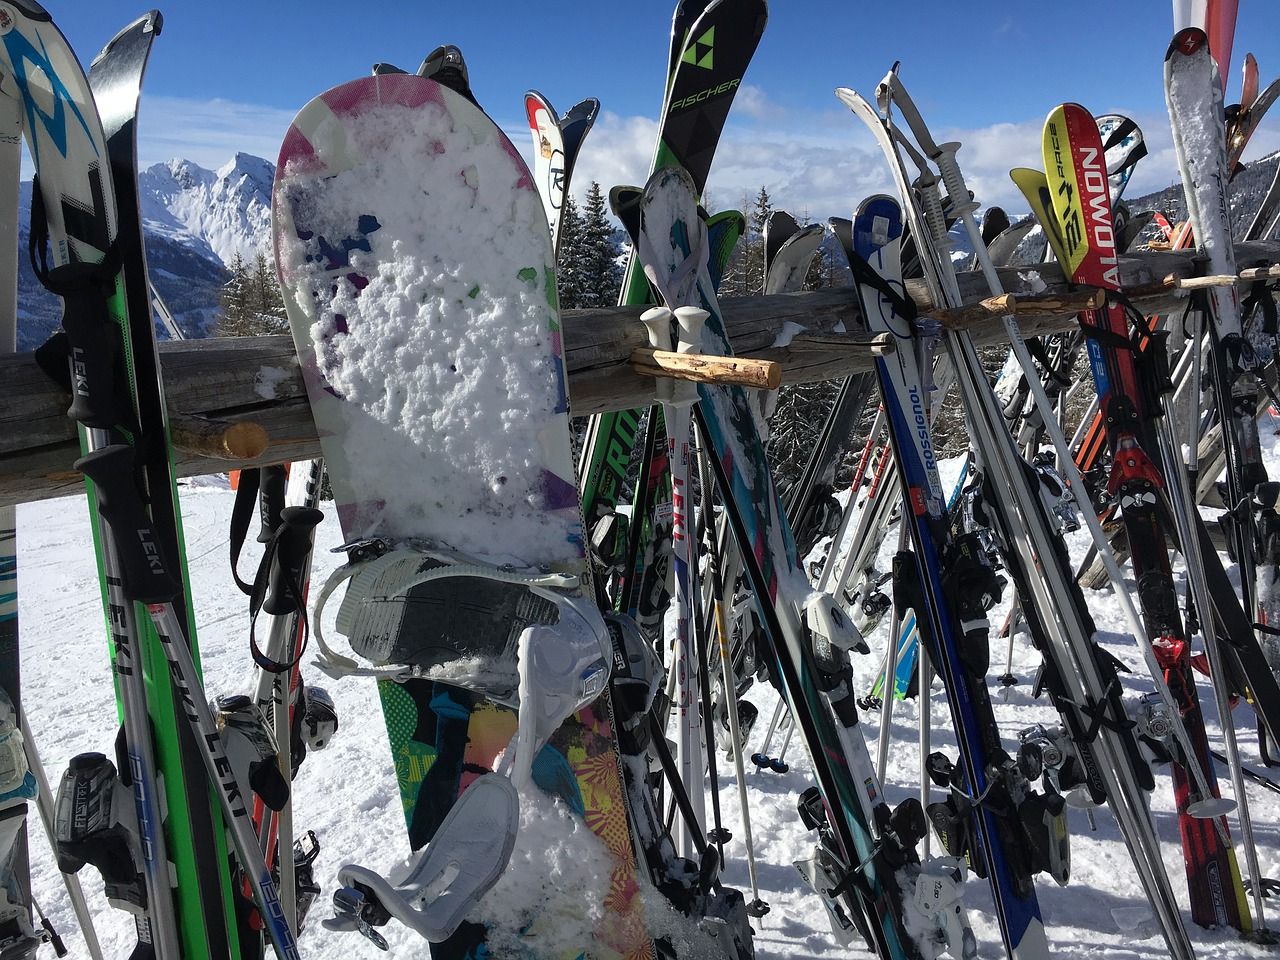 Jakimi elementami się kierować przy wyborze deski snowboardowej?